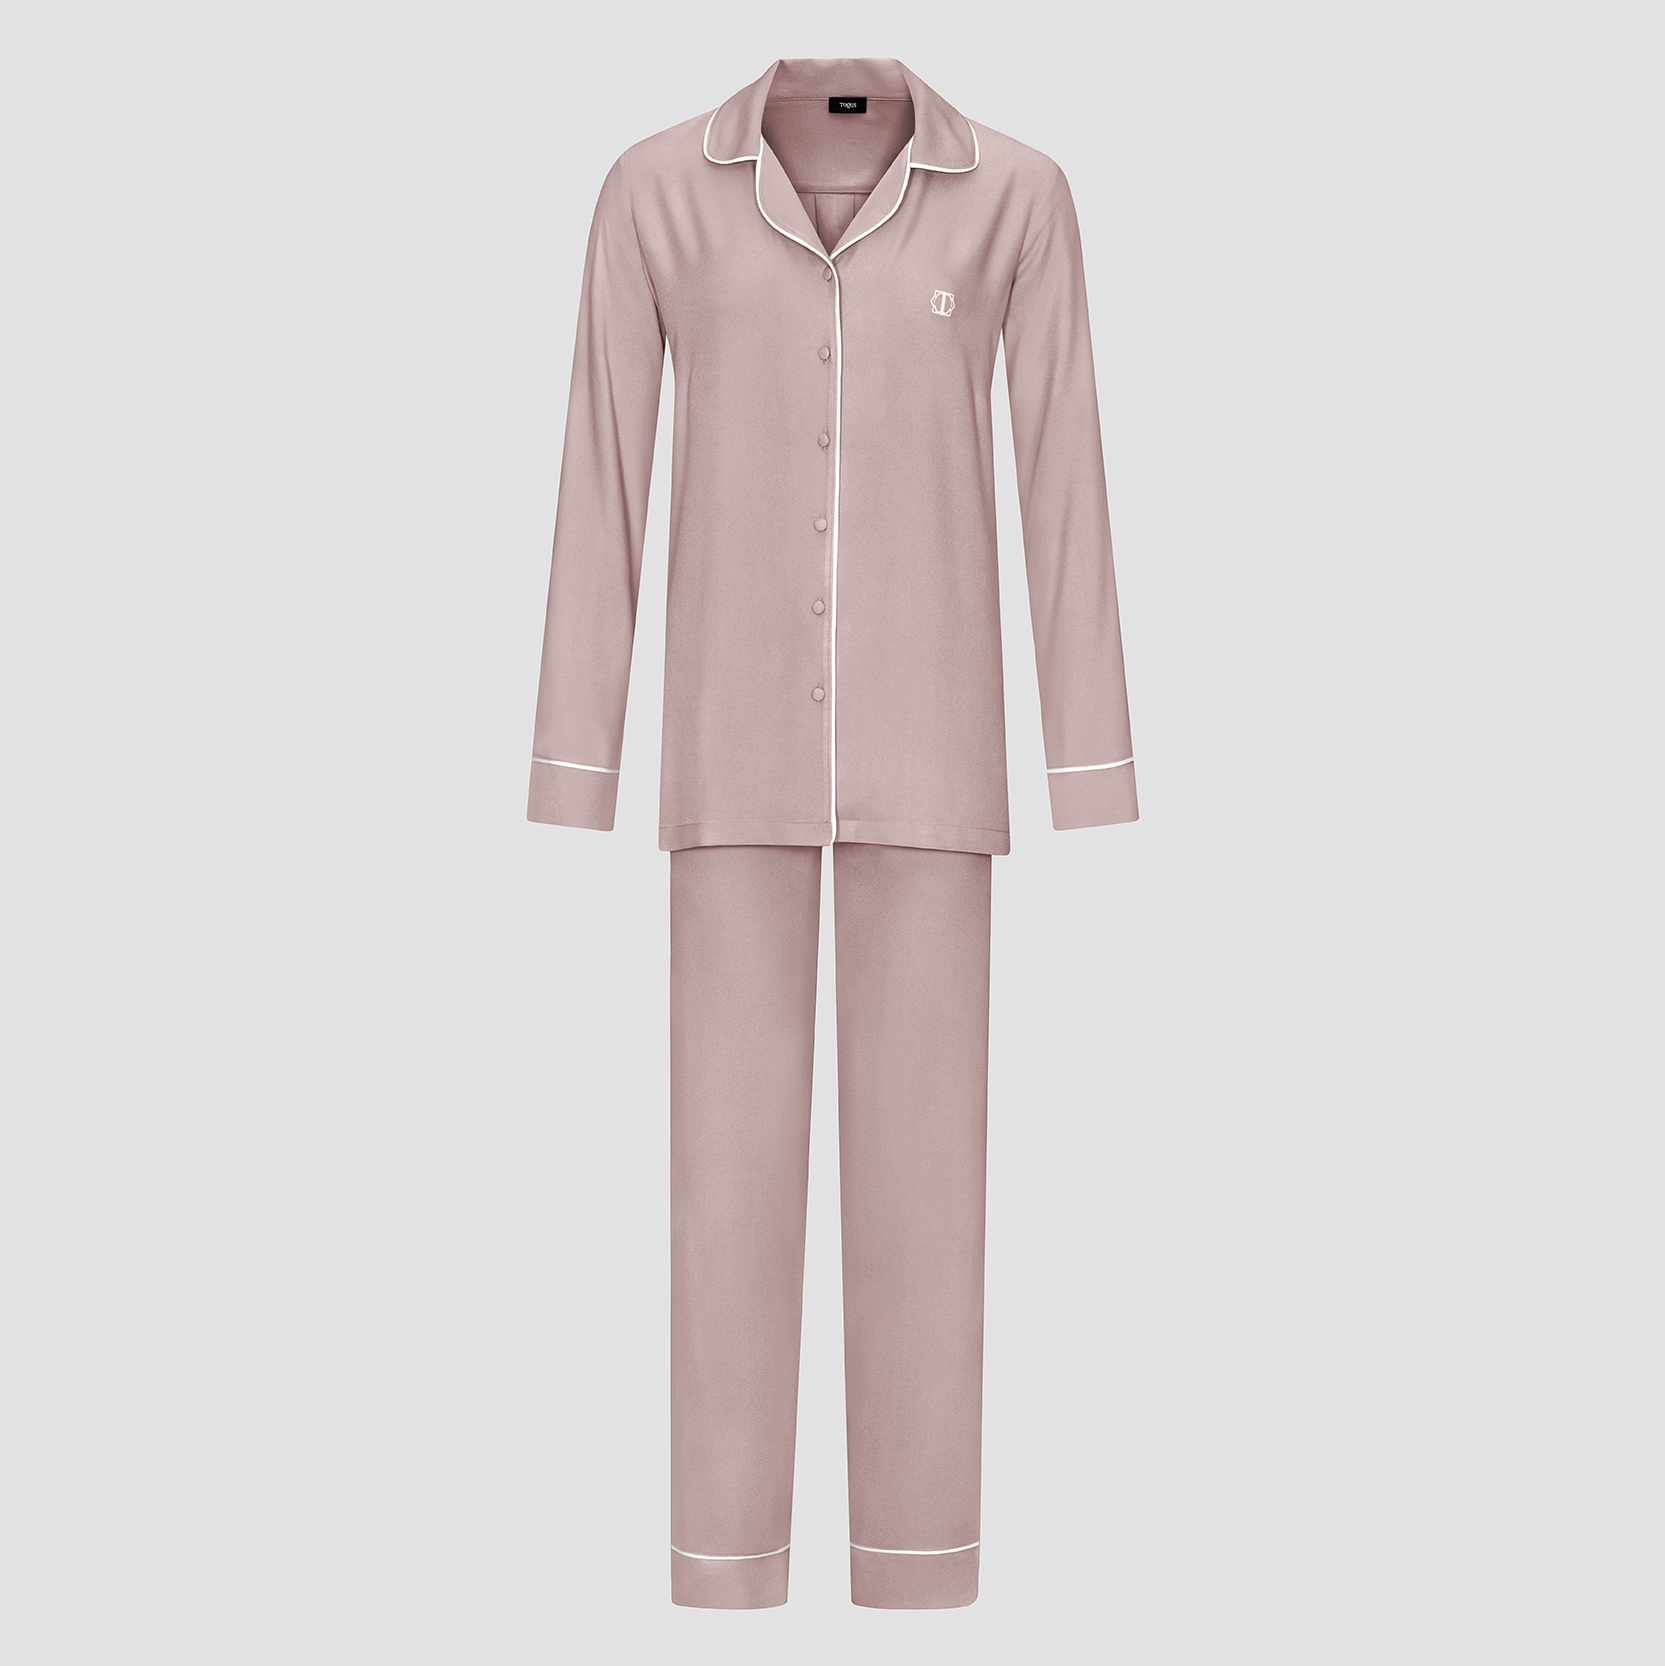 Пижама женская Togas Рамель розовая 2 предмета жен пижама арт 16 0661 голубой р 54